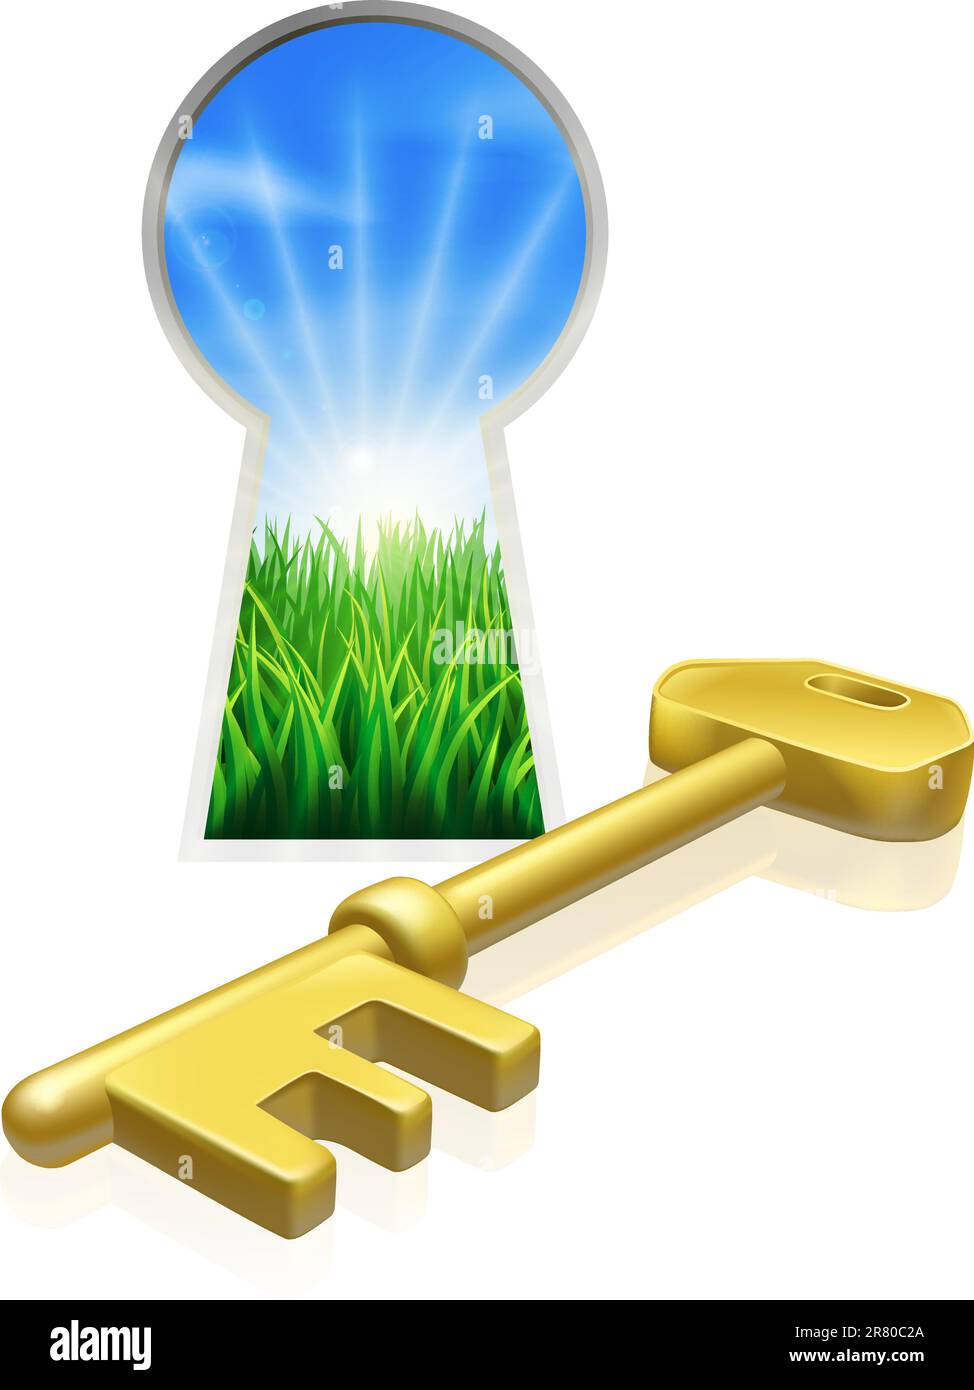 Illustrazione concettuale della chiave e del buco della chiave che si affaccia su un bellissimo campo verde. Concetto di libertà, opportunità o altra metafora aziendale Illustrazione Vettoriale